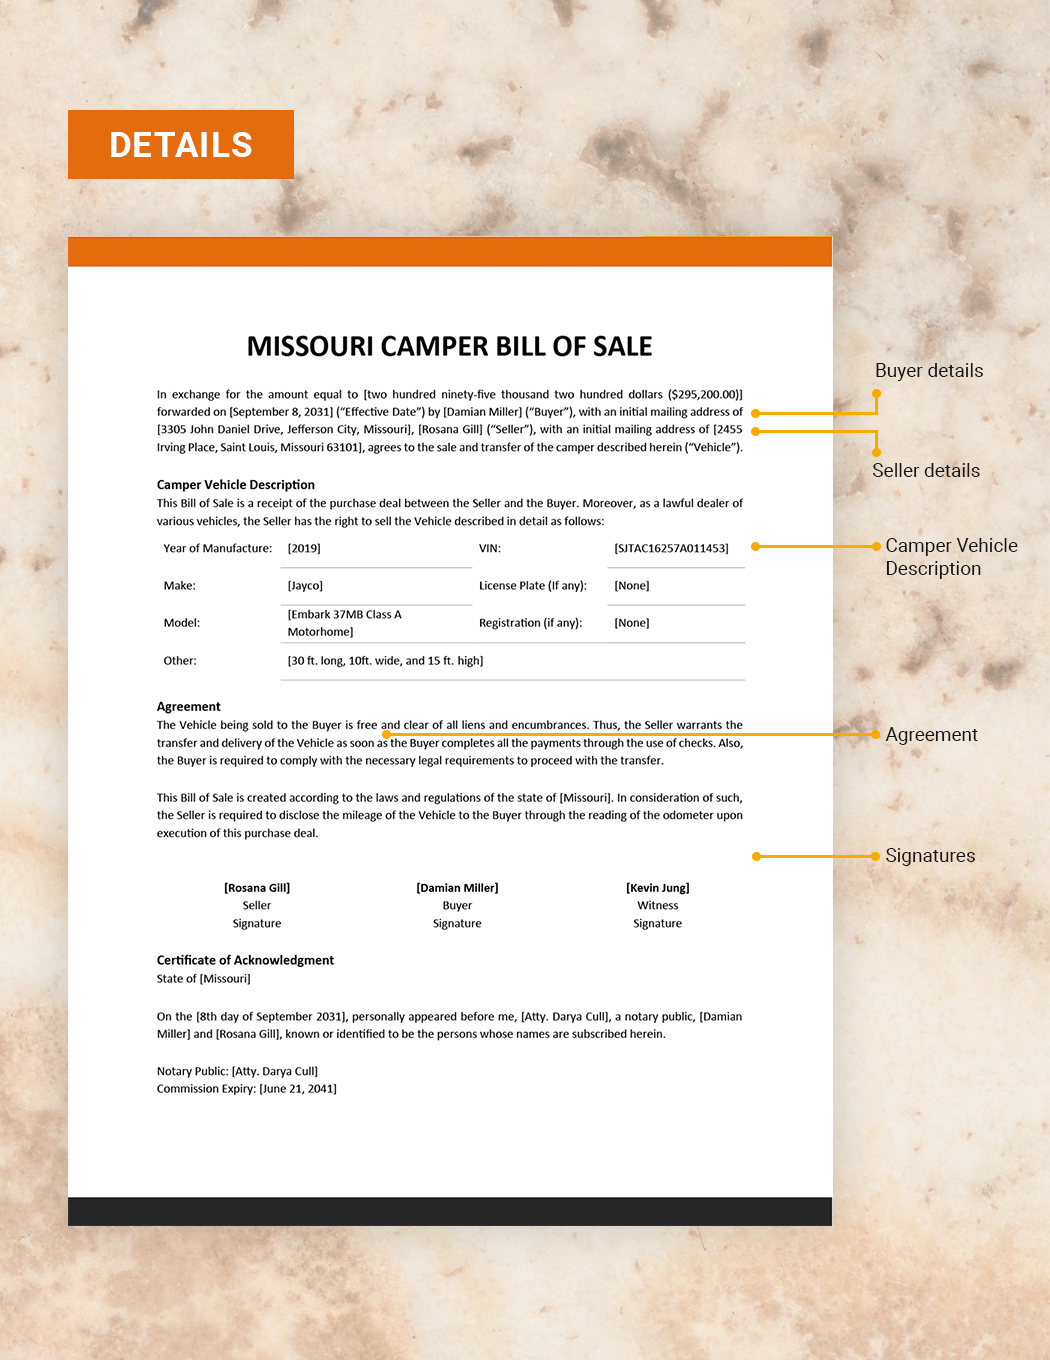 Missouri Camper Bill of Sale Template